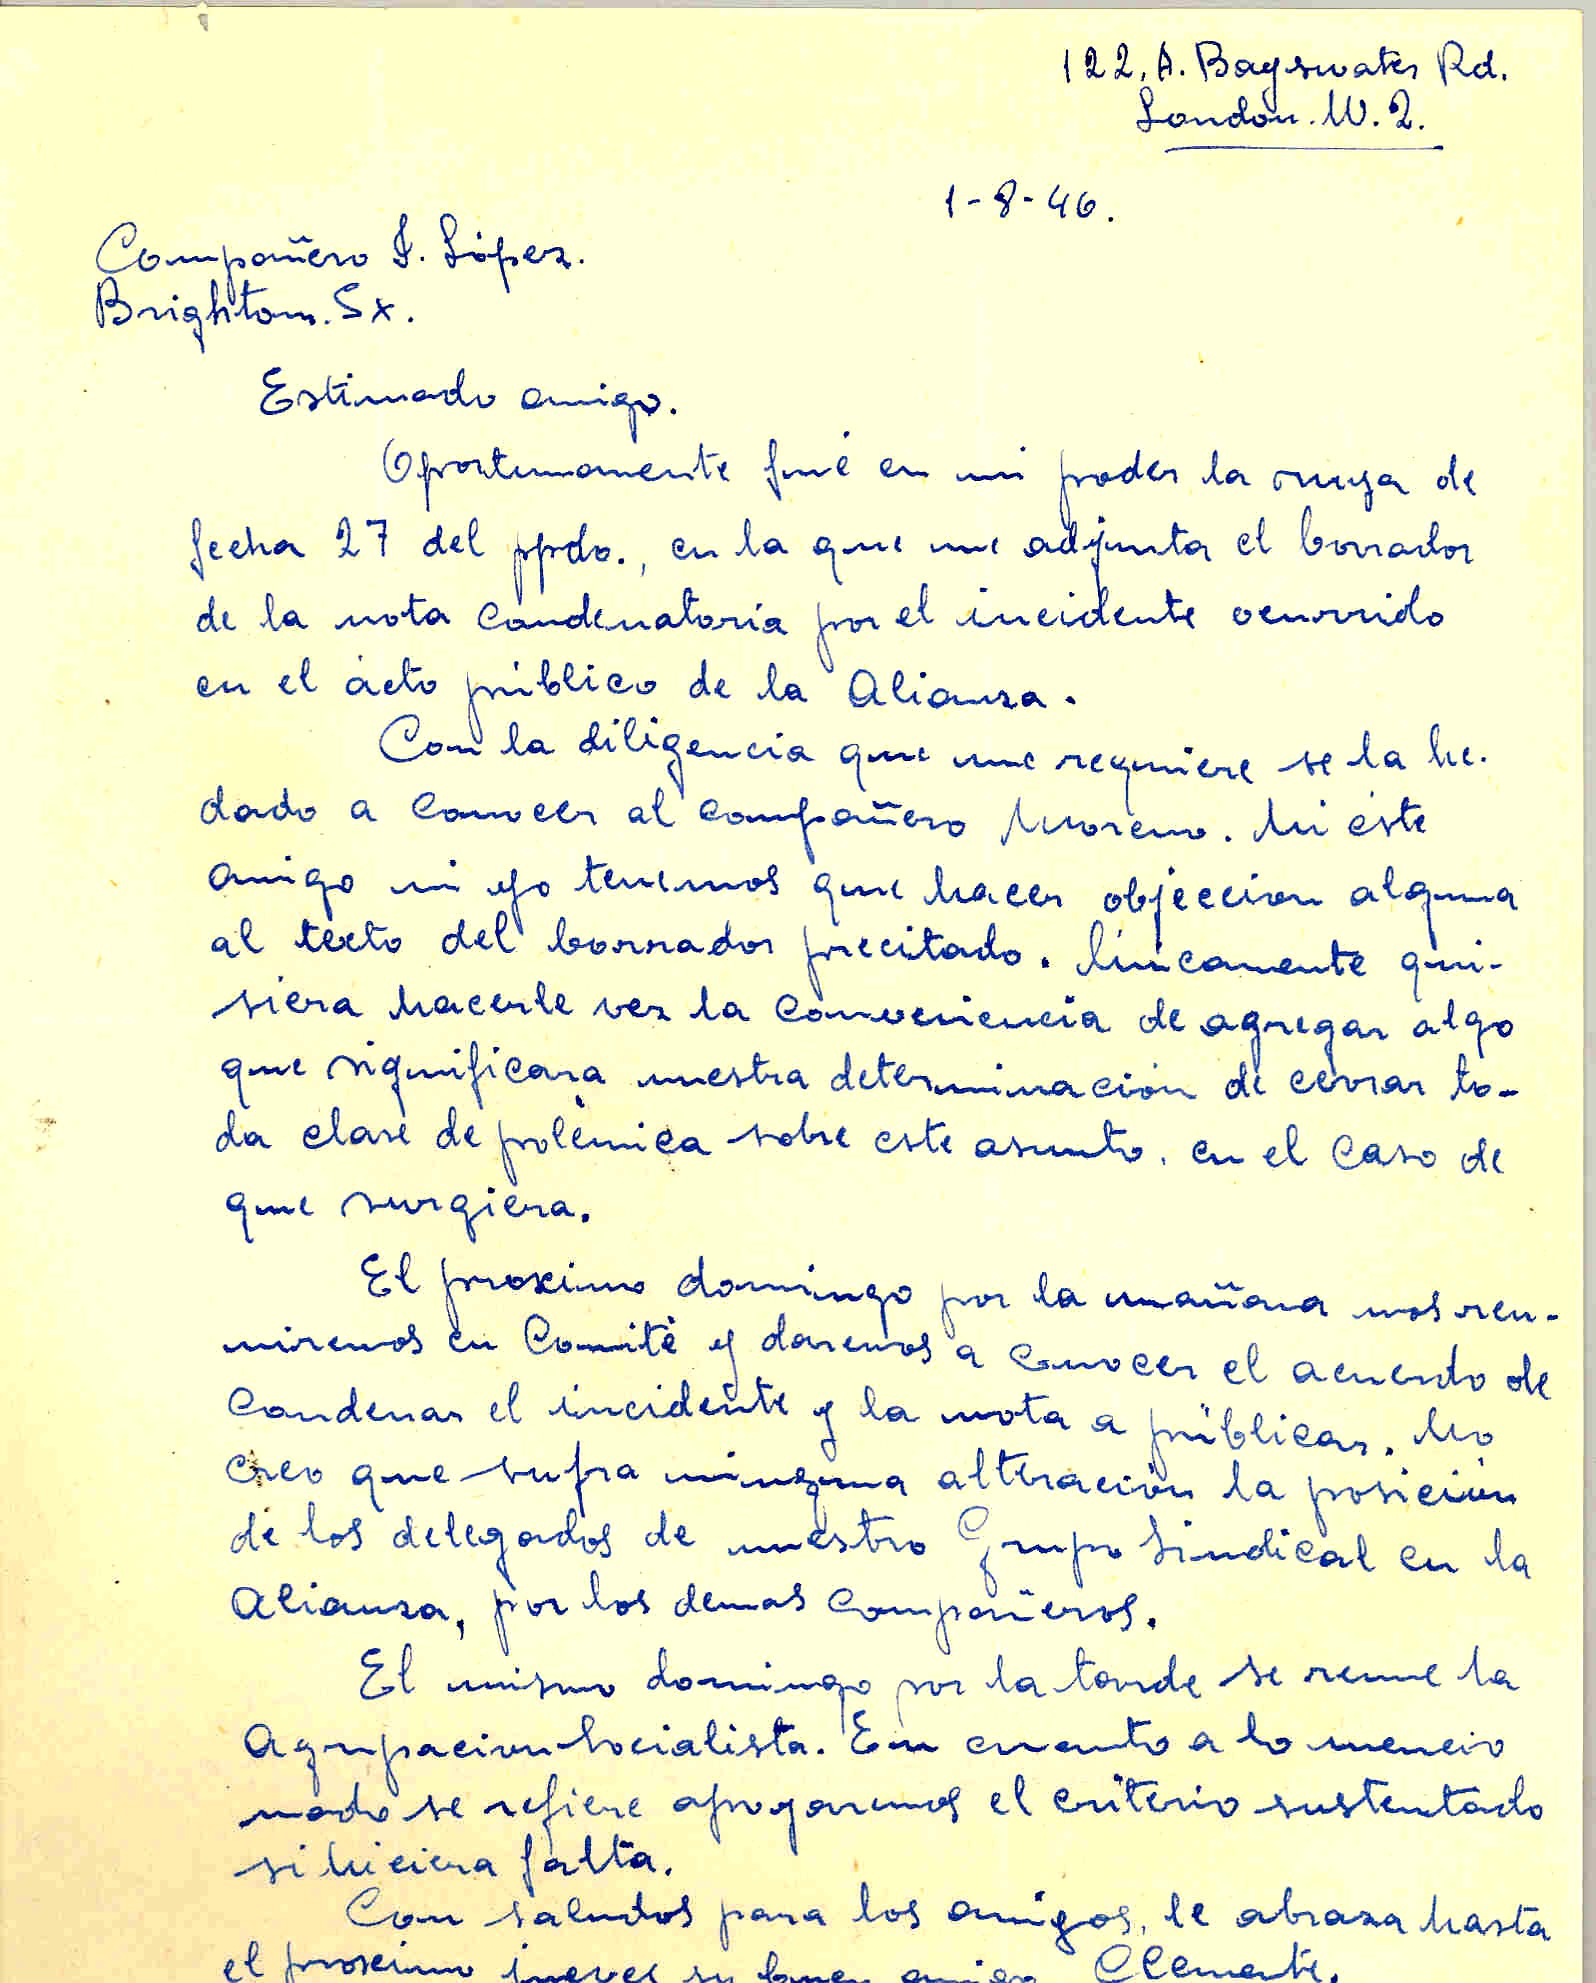 Carta de Clemente García en la que comunica que publicará la nota de la pasada reunión de la Alianza.